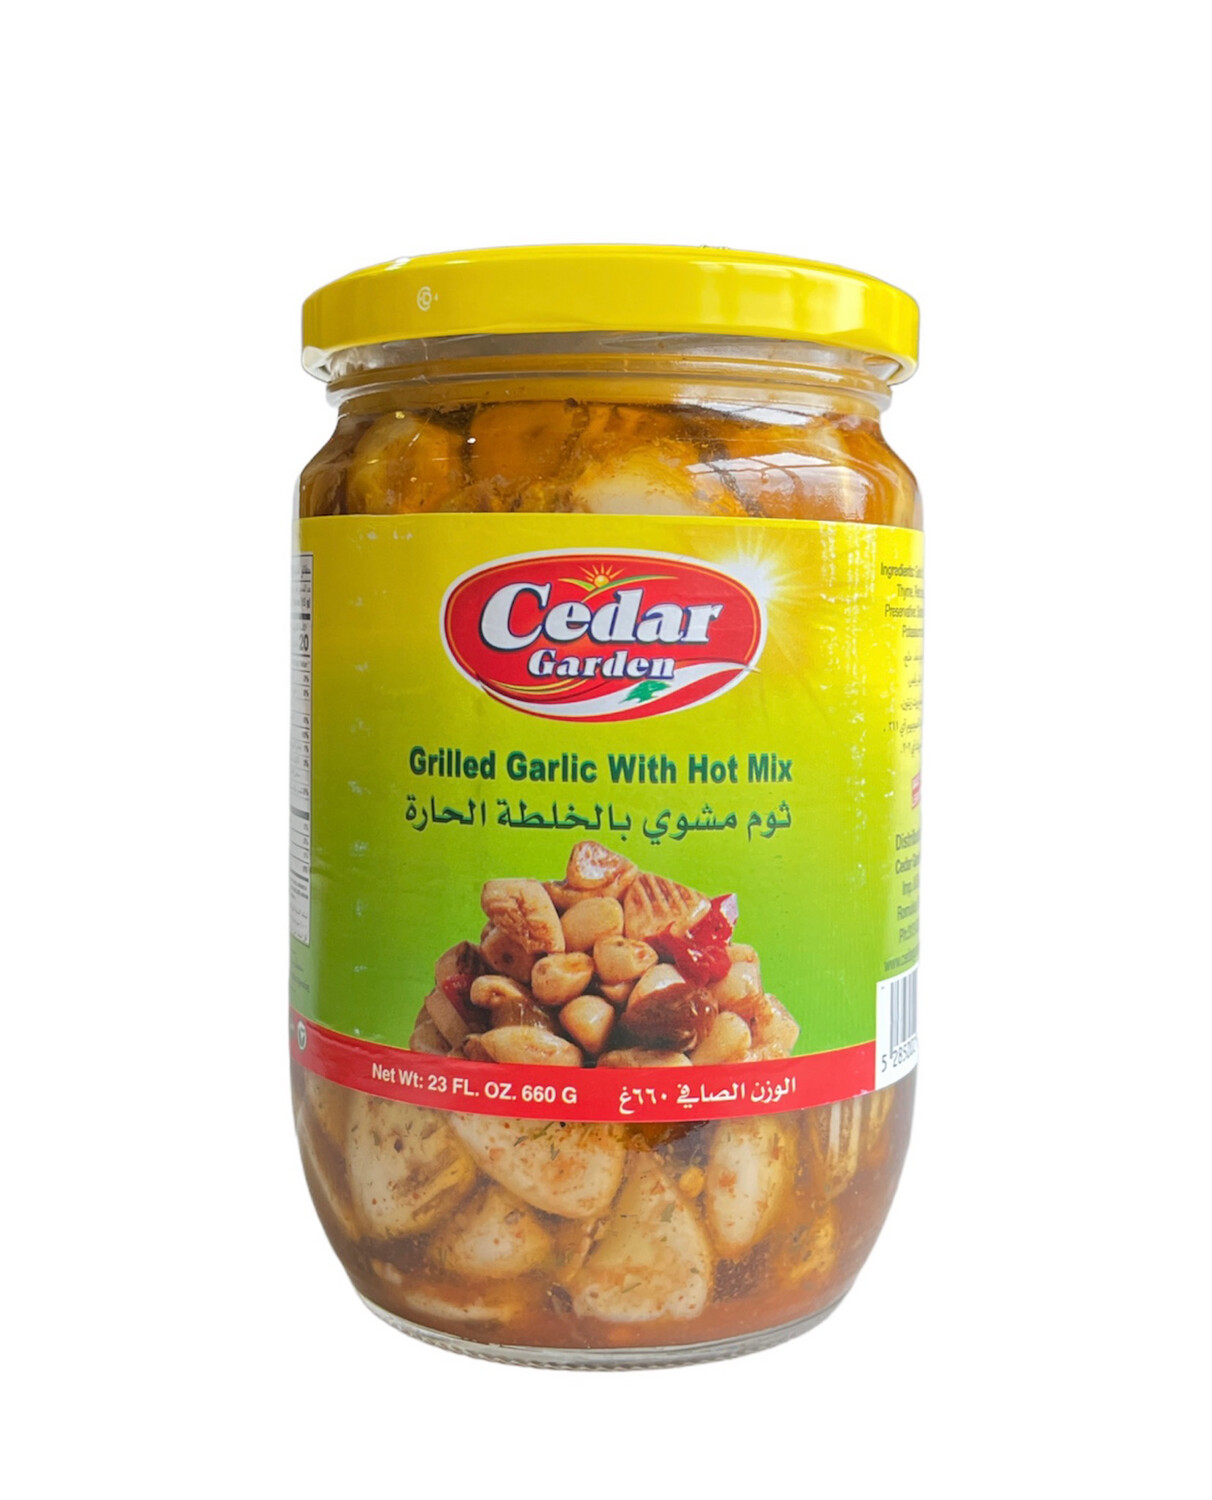 Cedar Garden Grilled Garlic With Hot Mix 12x660g